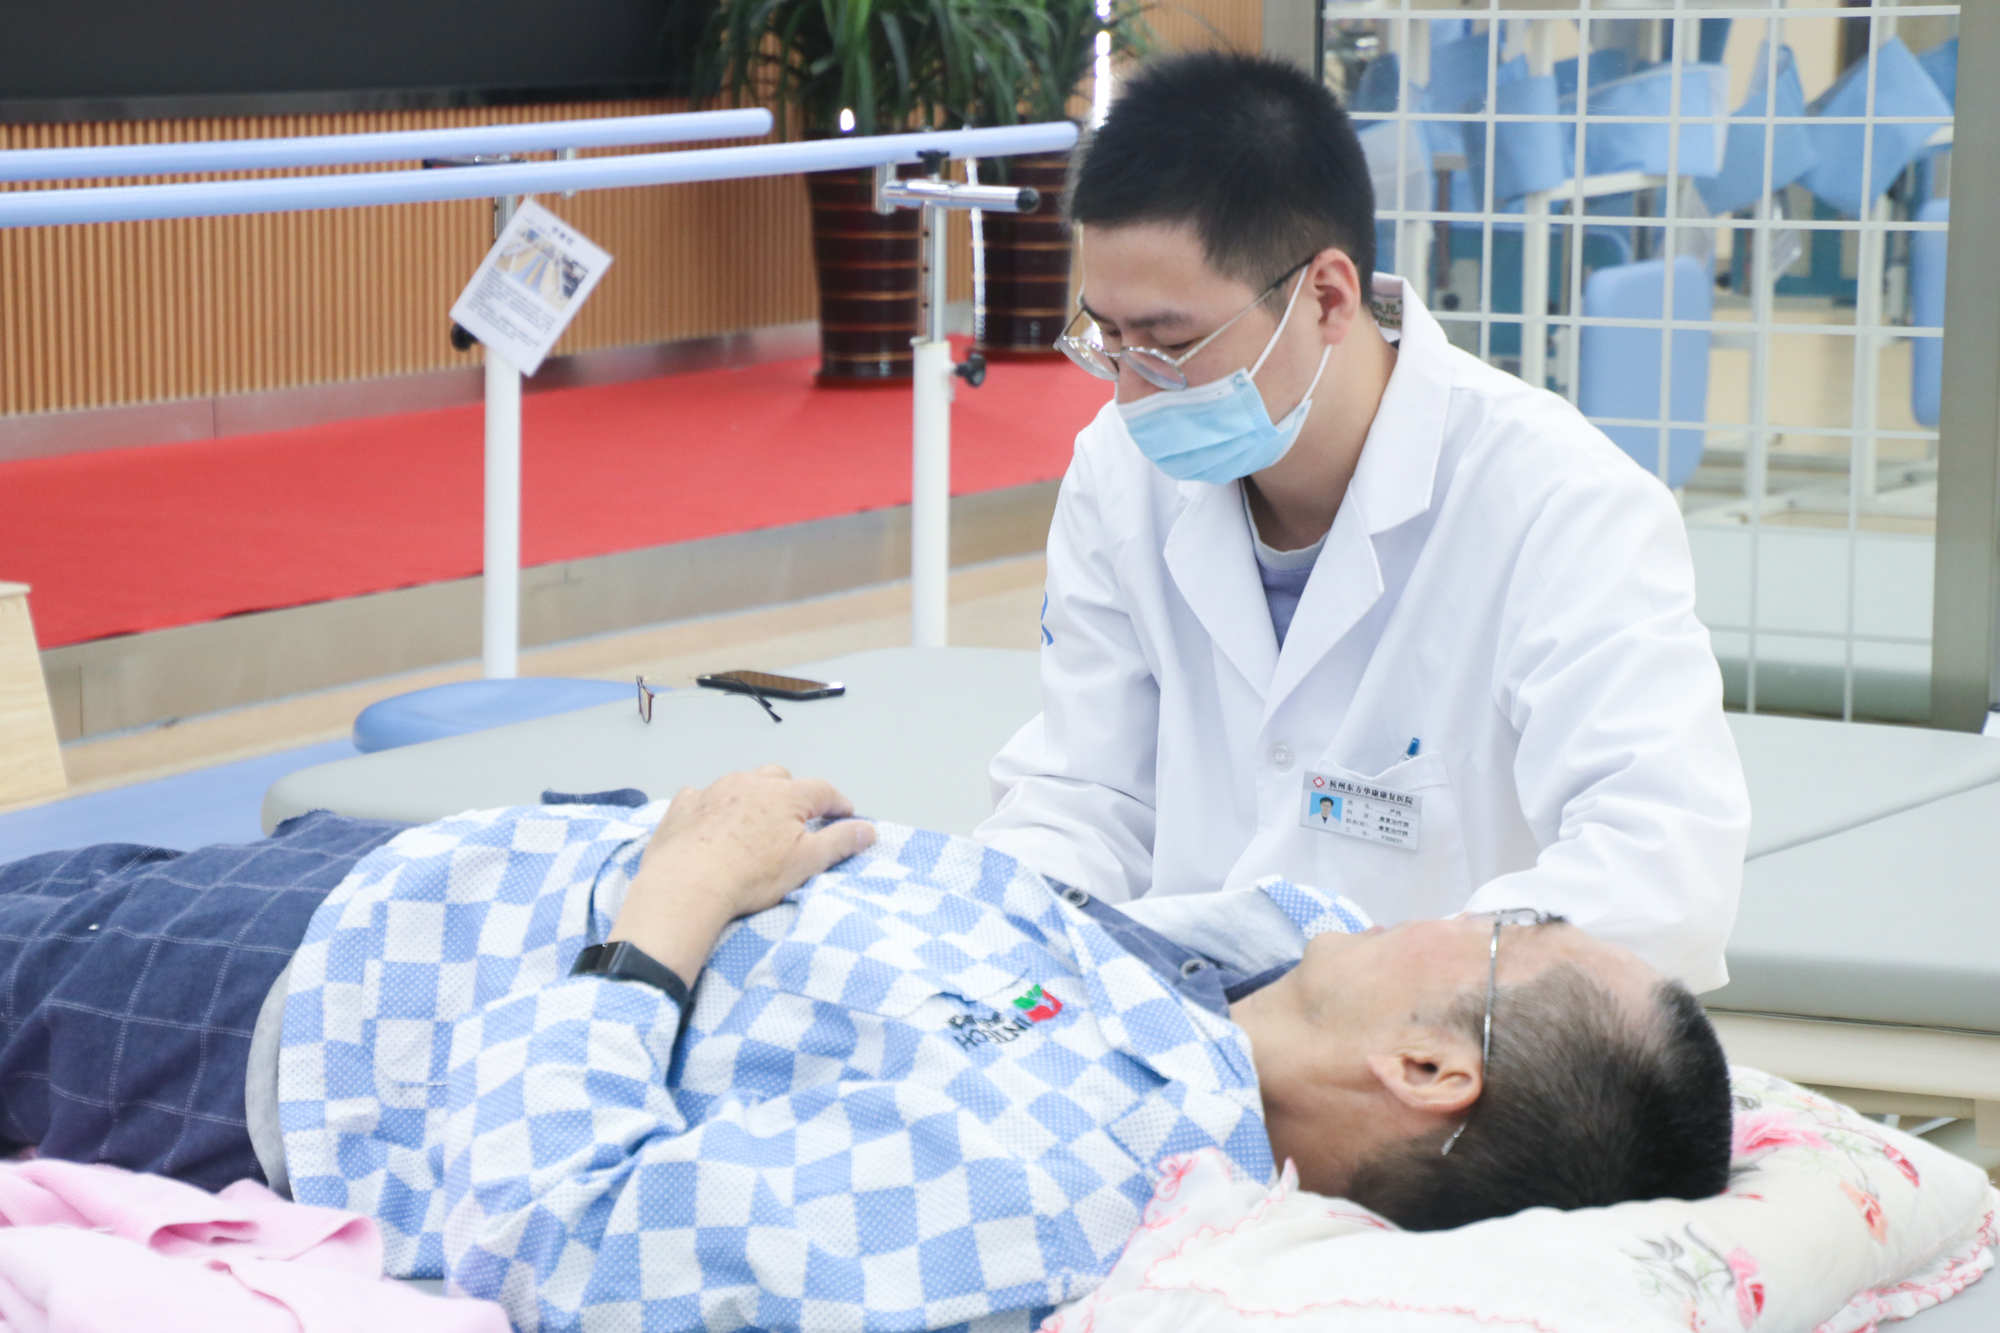 让卧床老人得以安享晚年 杭州金诚护理院用专业康康护理与细心关爱温暖老人